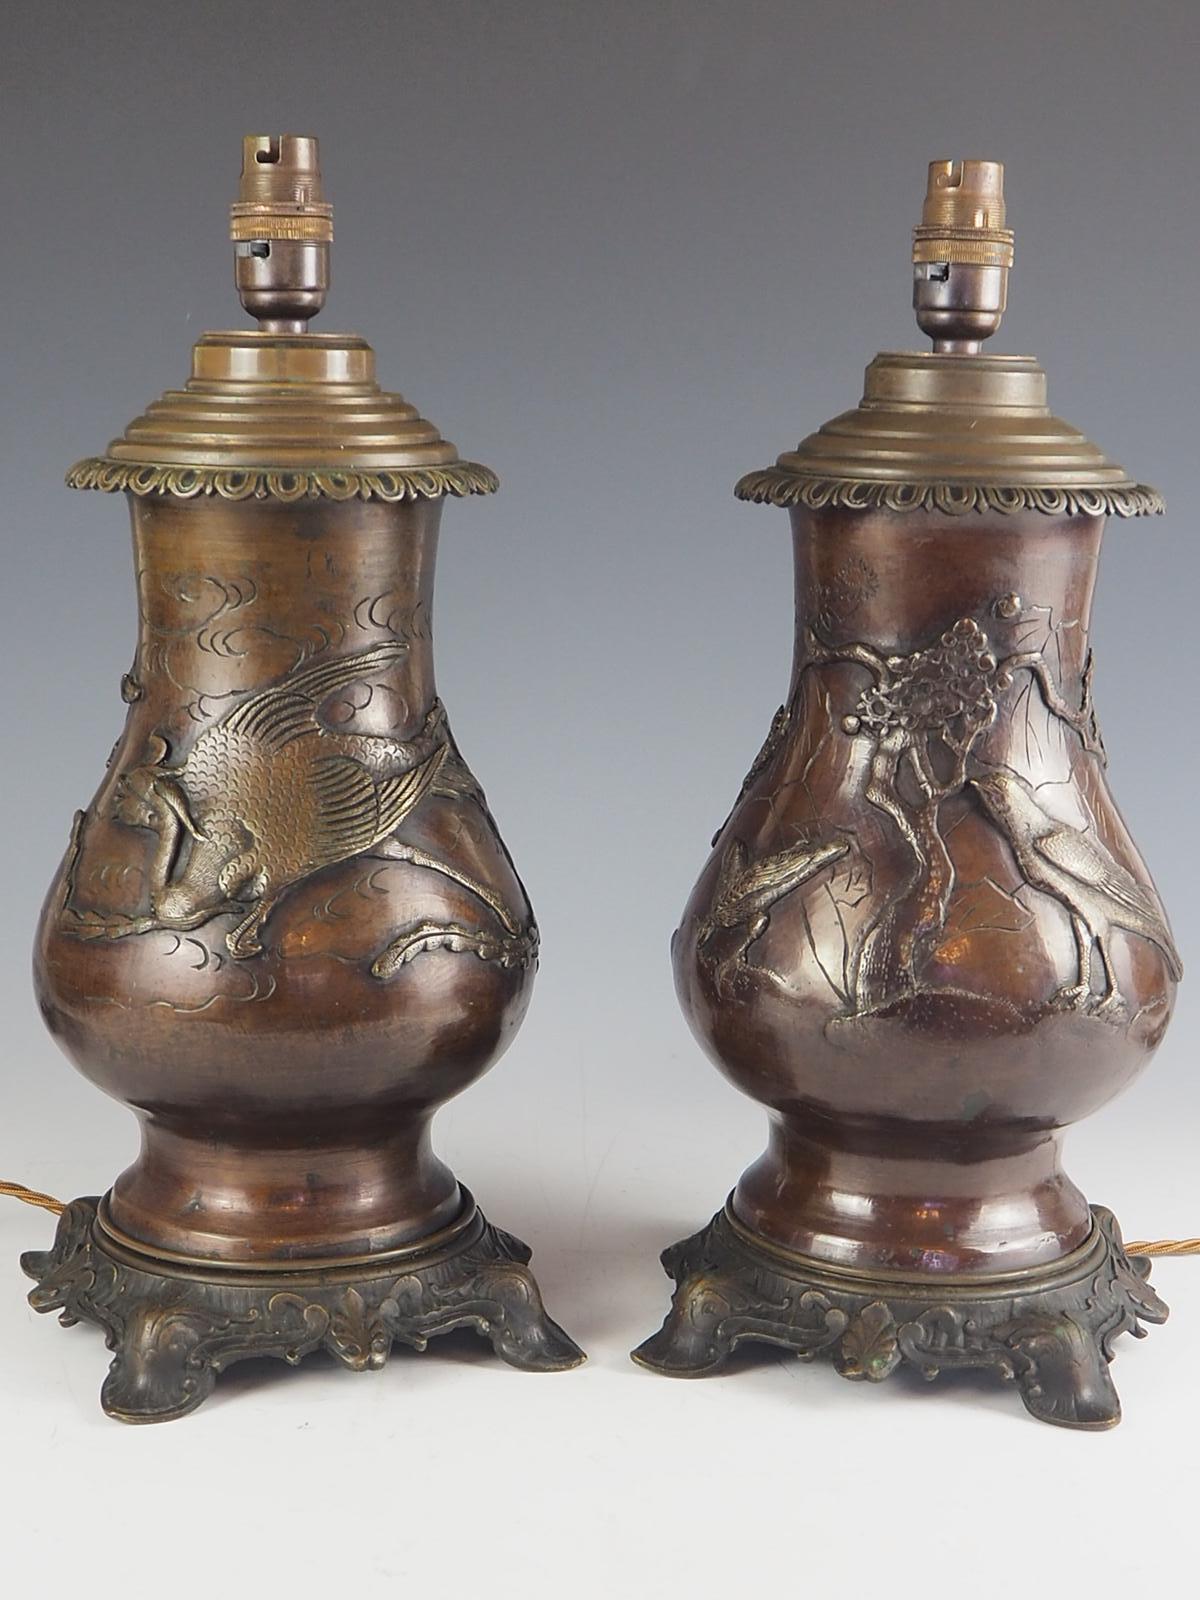 Une belle paire de lampes à huile japonaises en bronze datant de C.I.C., aujourd'hui converties à l'électricité.

Bronze finement moulé et détaillé avec des dragons impressionnants en haut-relief, des cerfs-volants, des oiseaux, des arbres et des